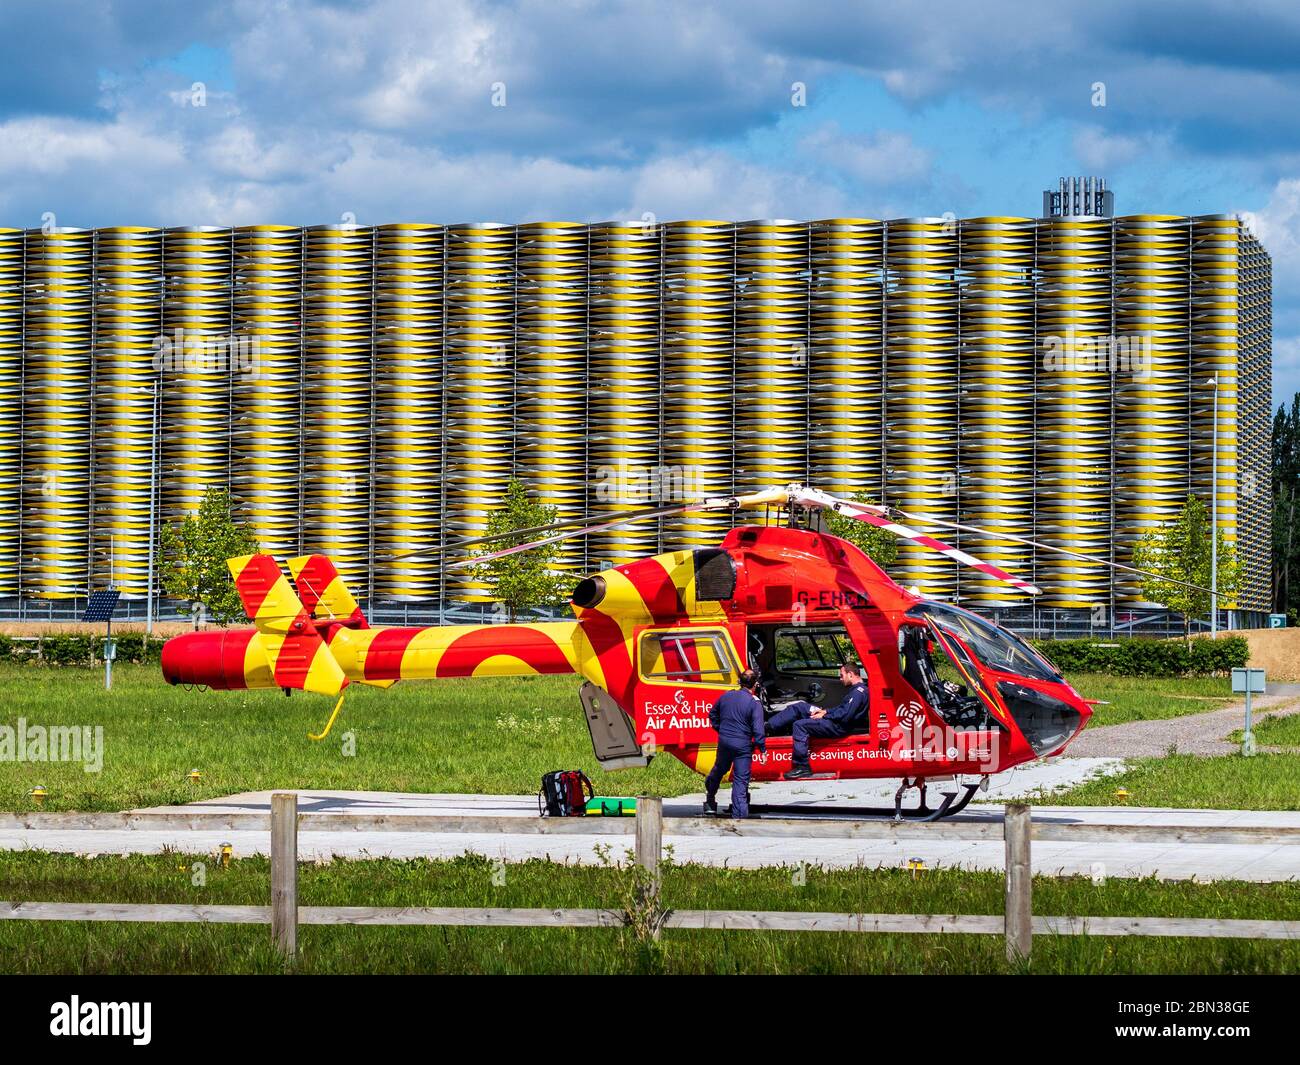 Elicottero Air Ambulance Cambridge. L'ambulanza dell'aria di Essex & Herts attende al Cambridge Addebrookes Hospital Helipad. McDonnell Douglas MD902 Explorer. Foto Stock